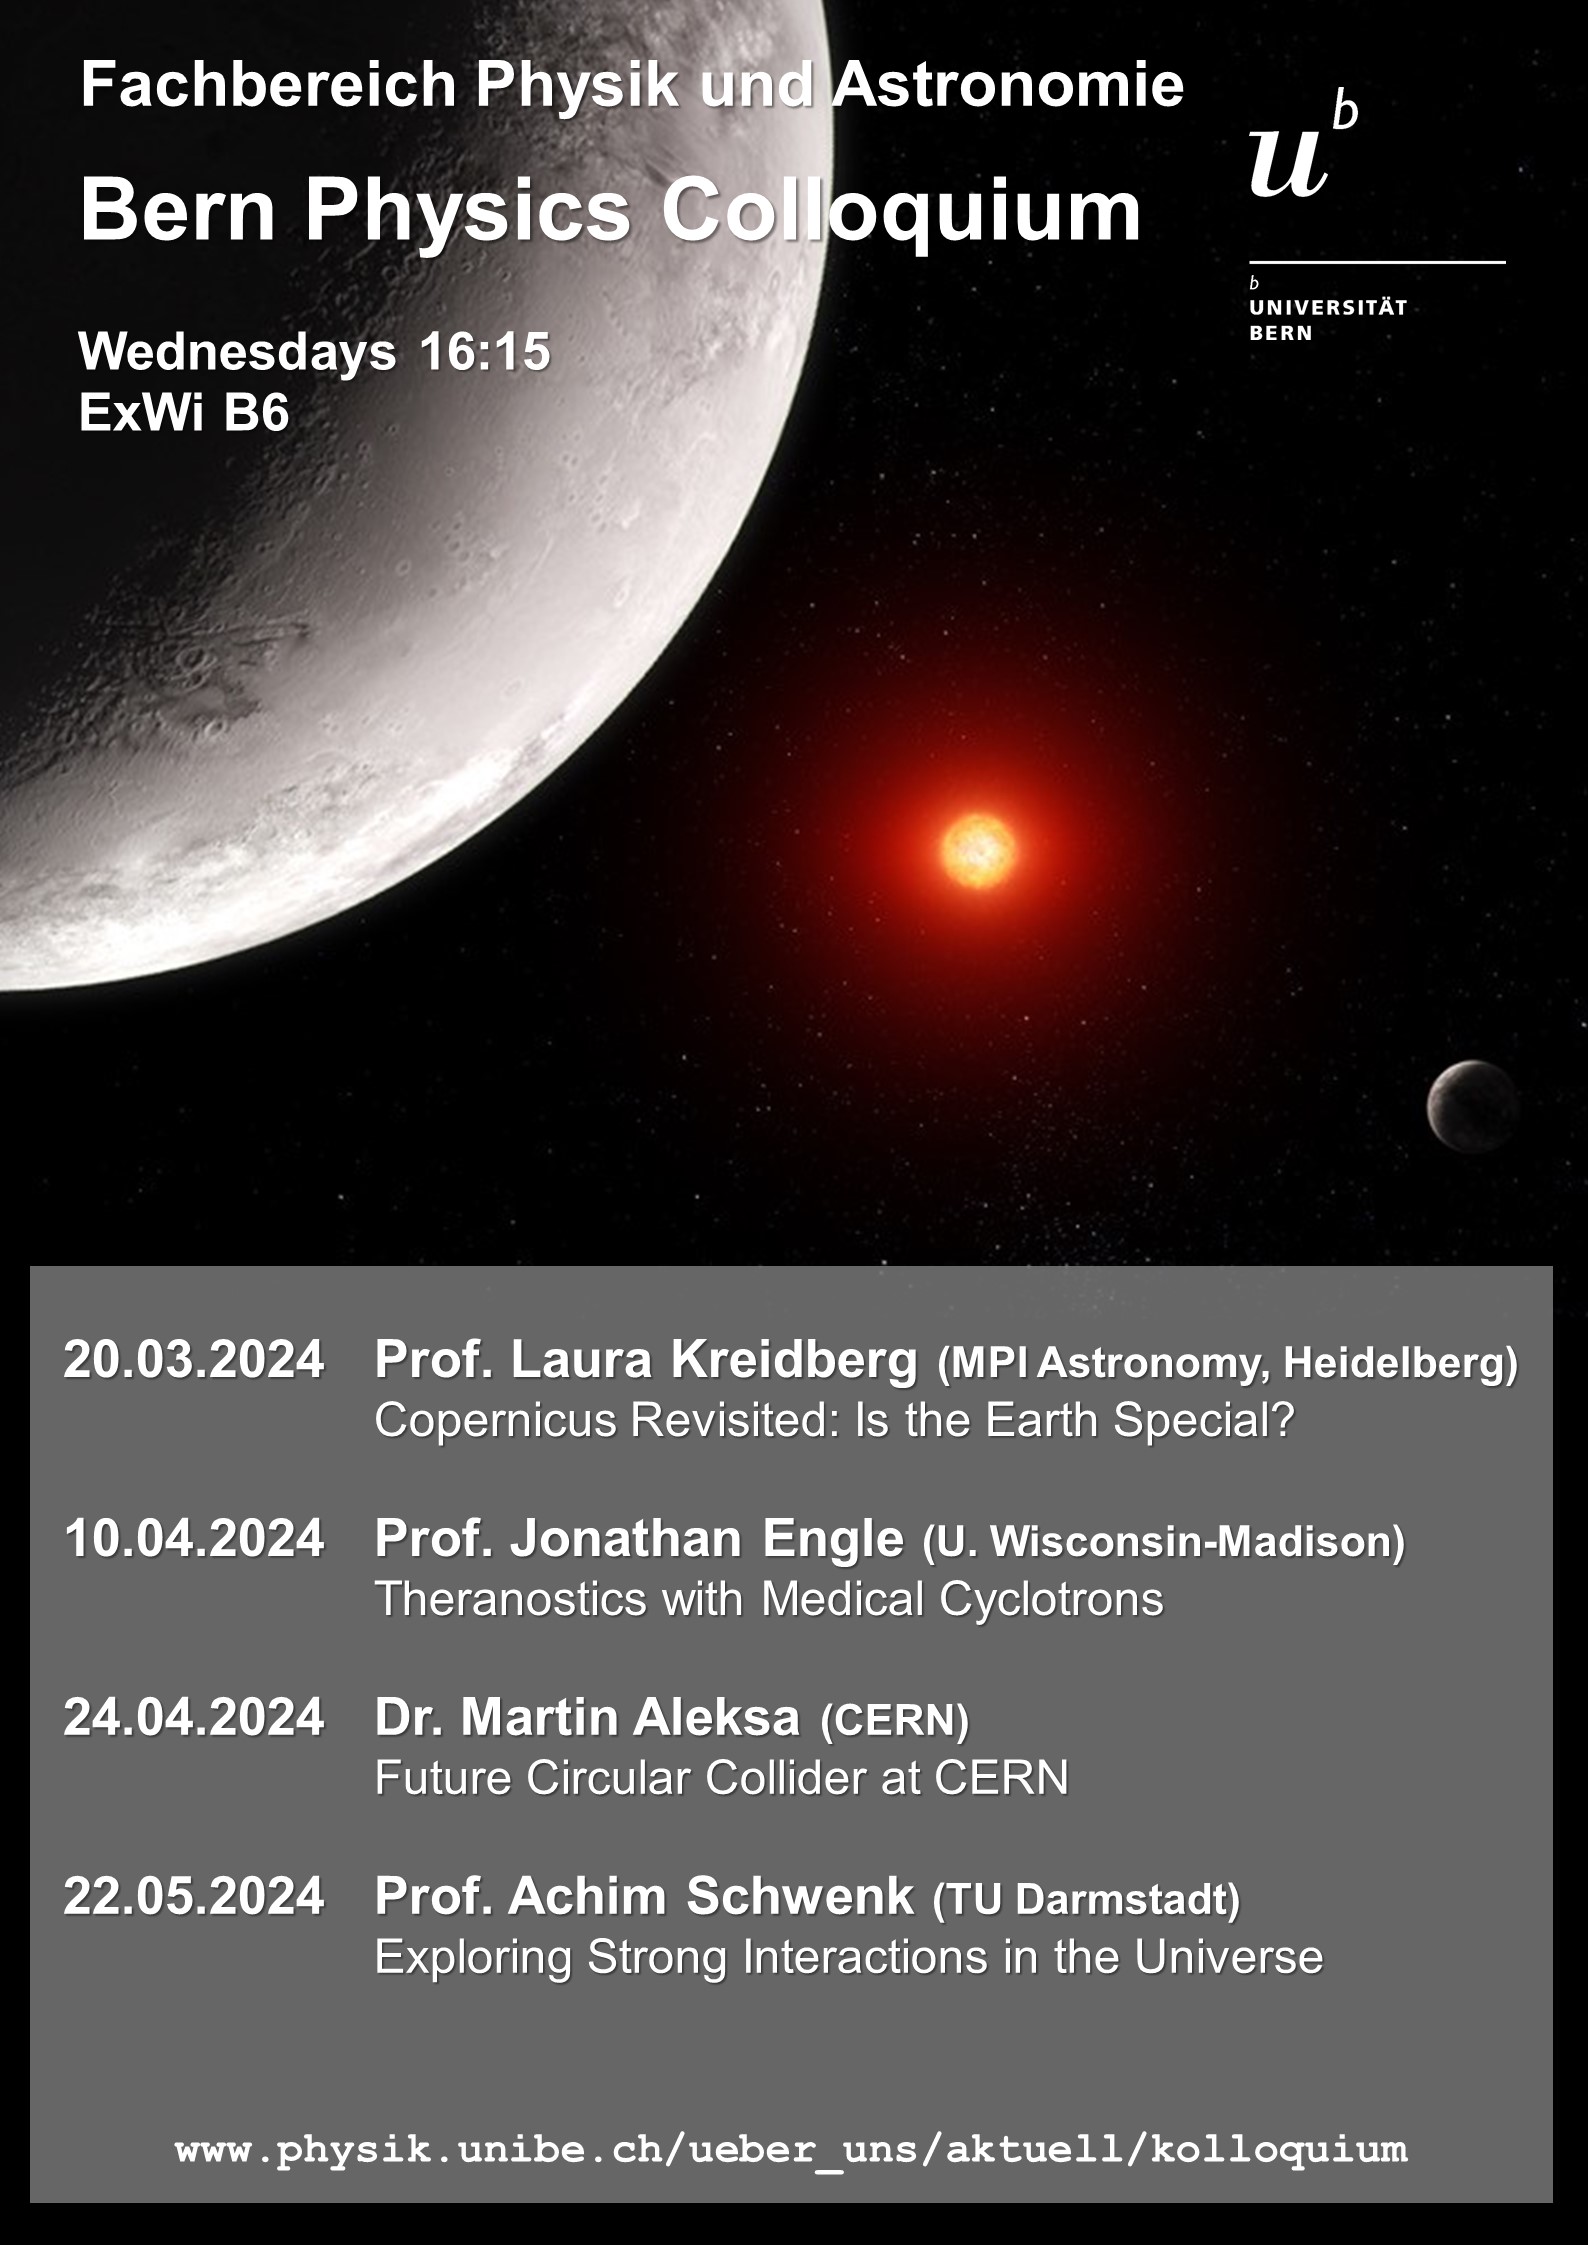 Program for the Bern Physics Colloquium